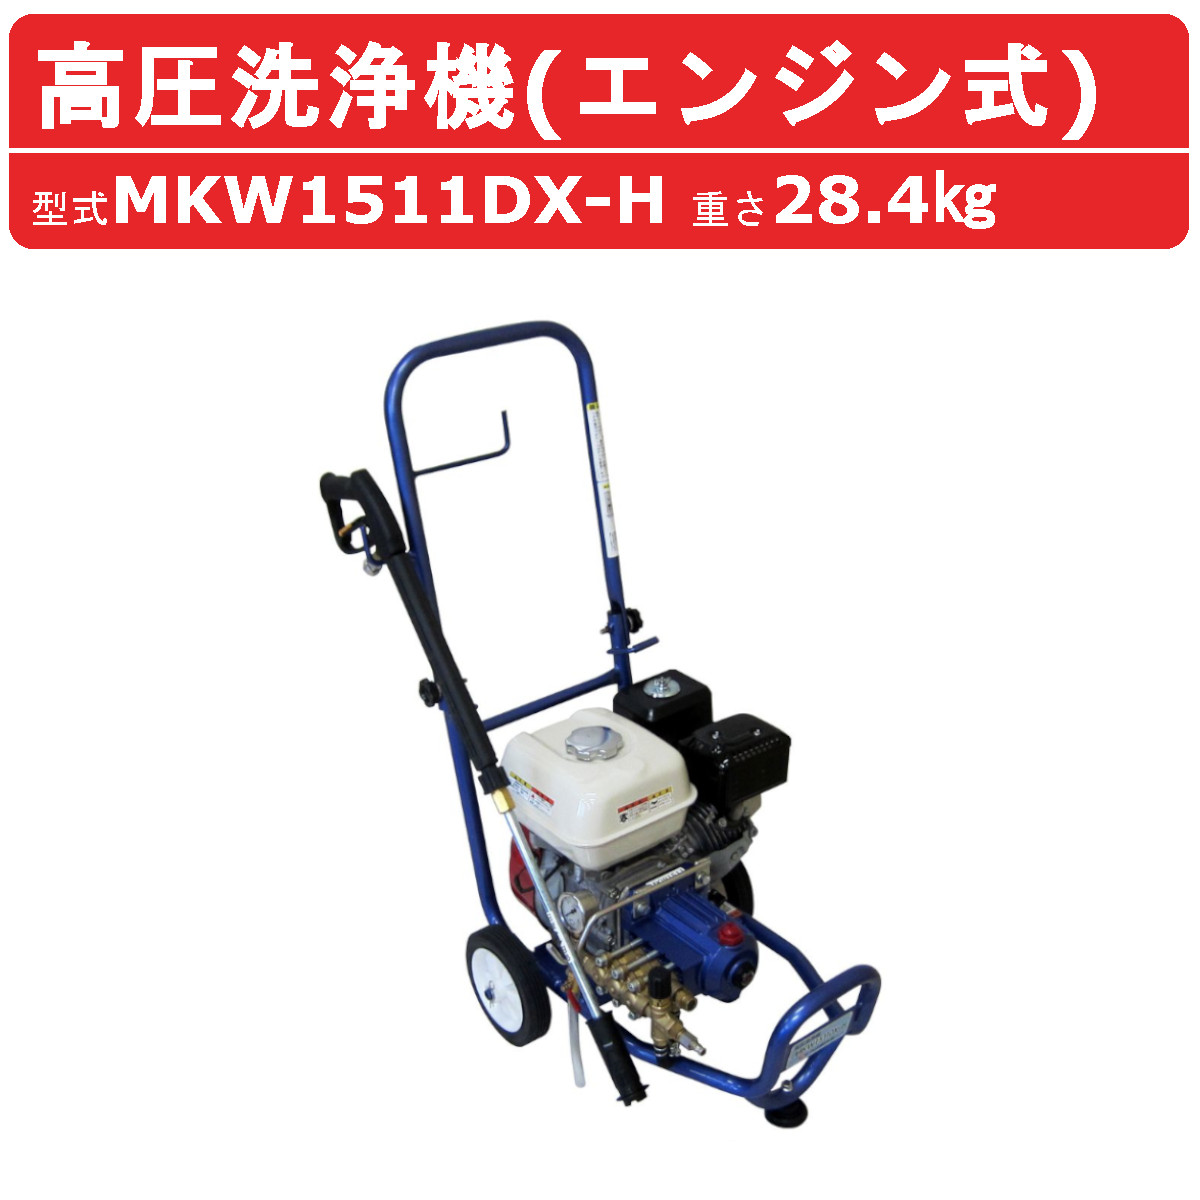 丸山製作所 高圧洗浄機 MKW1511DX-H-1 旧型式 MKW1511DX-H エンジン式 